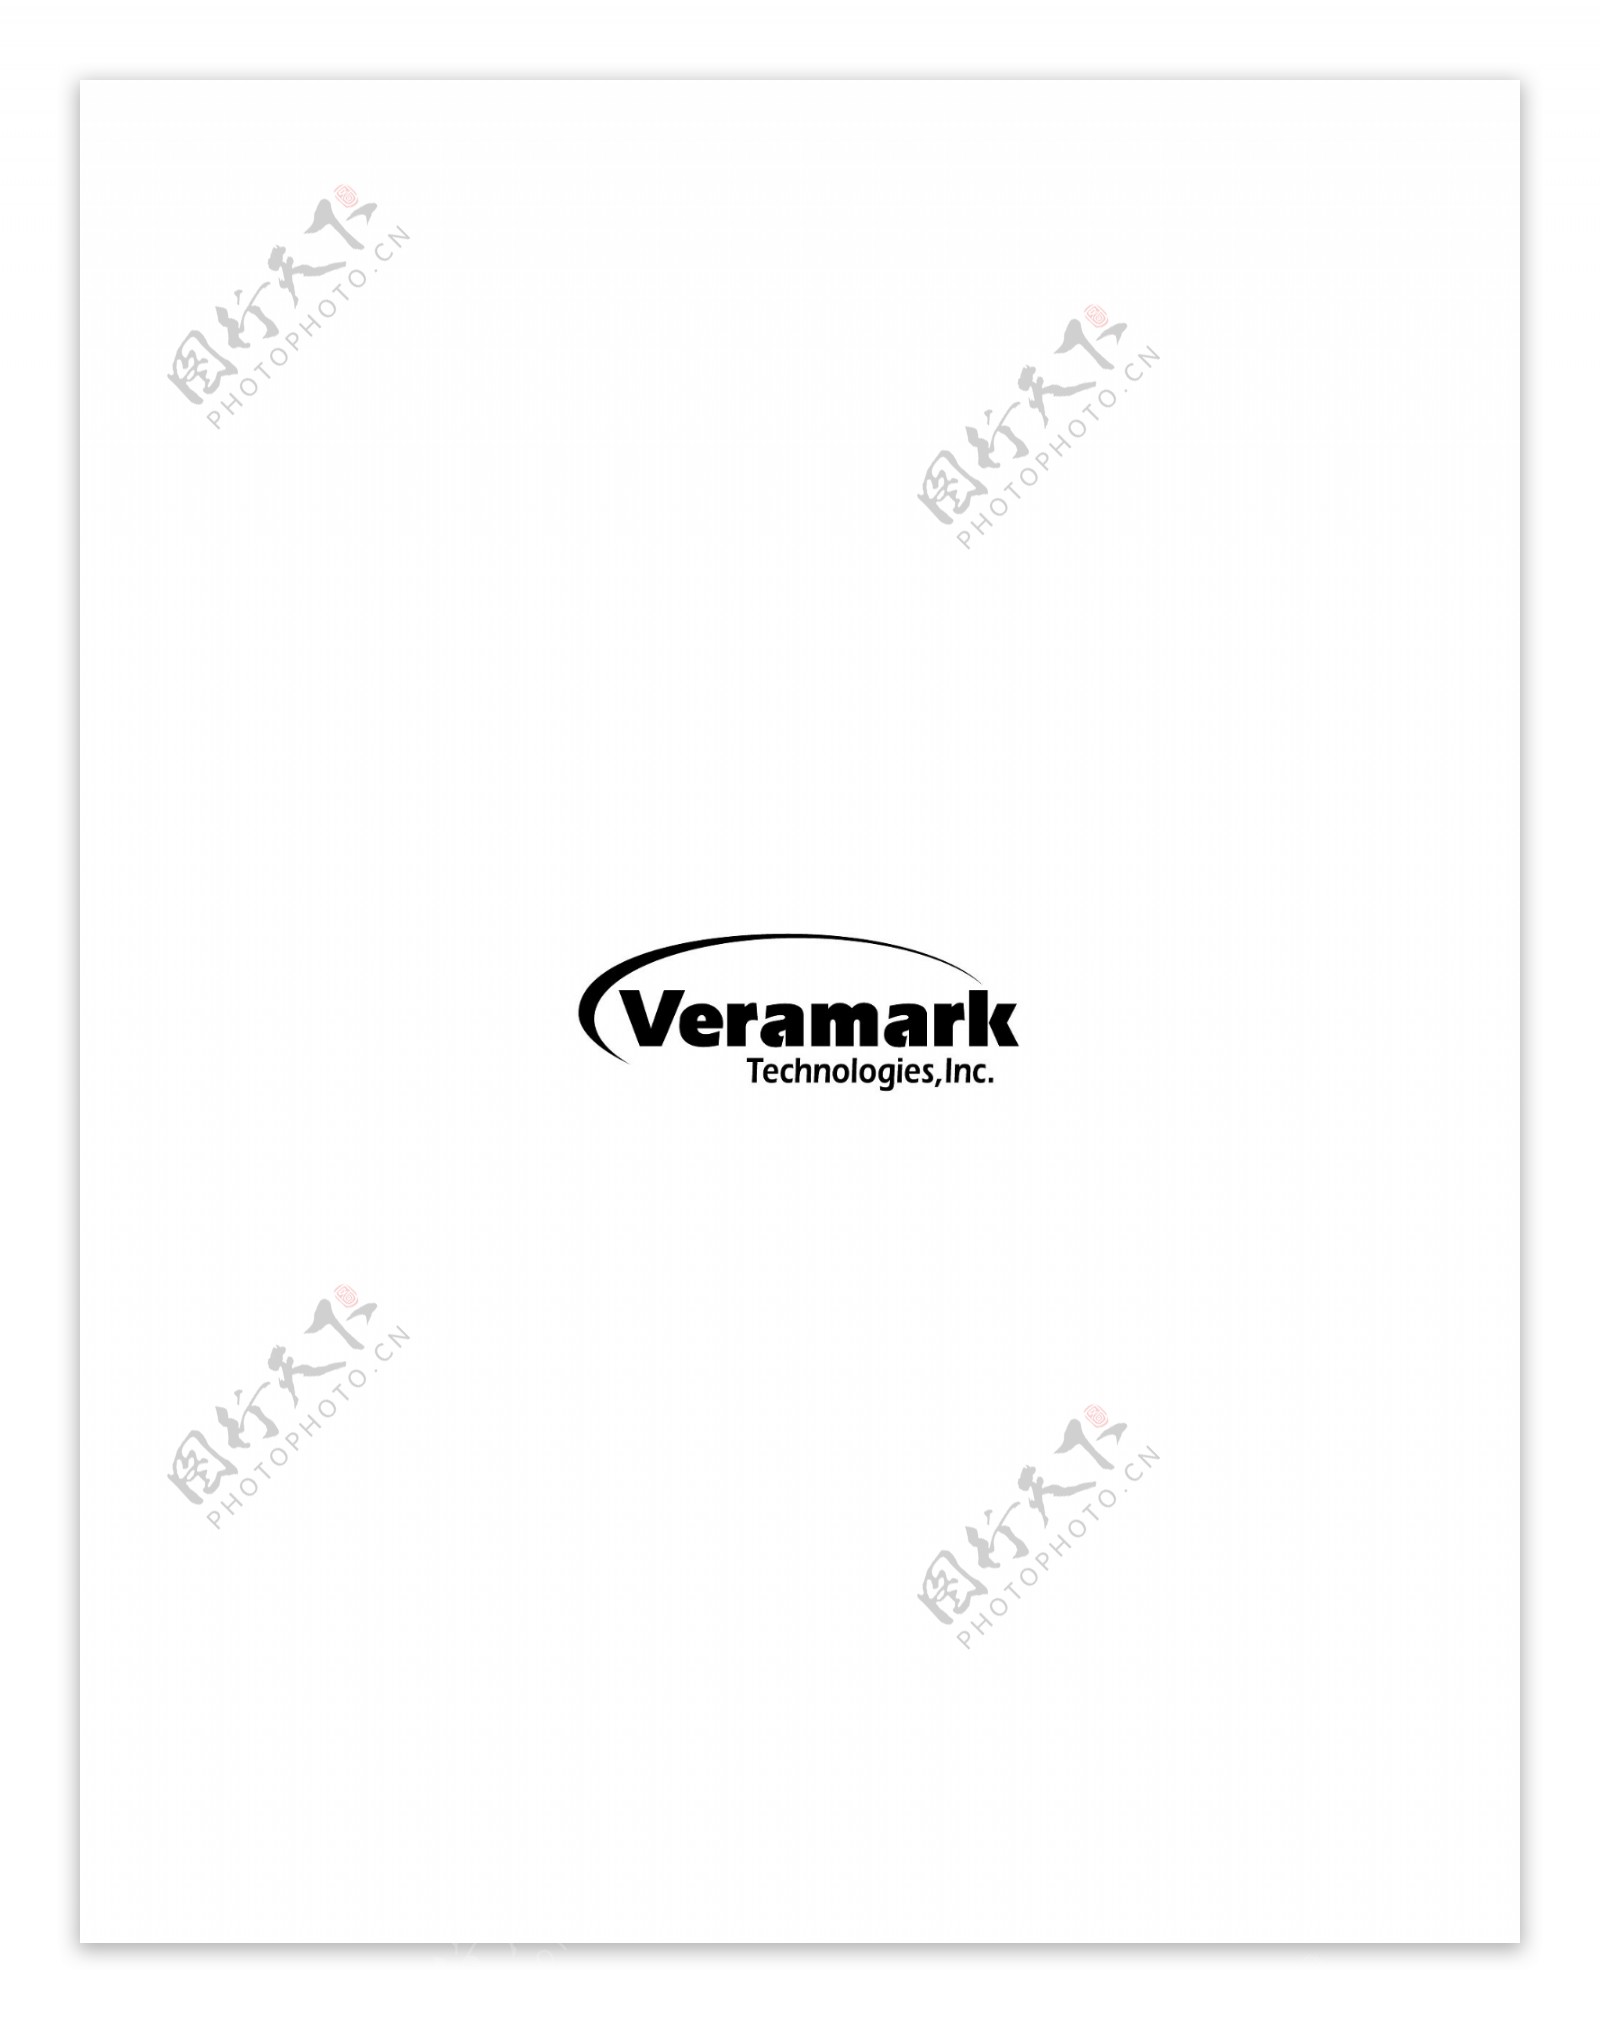 VeramarkTechnologieslogo设计欣赏国外知名公司标志范例VeramarkTechnologies下载标志设计欣赏